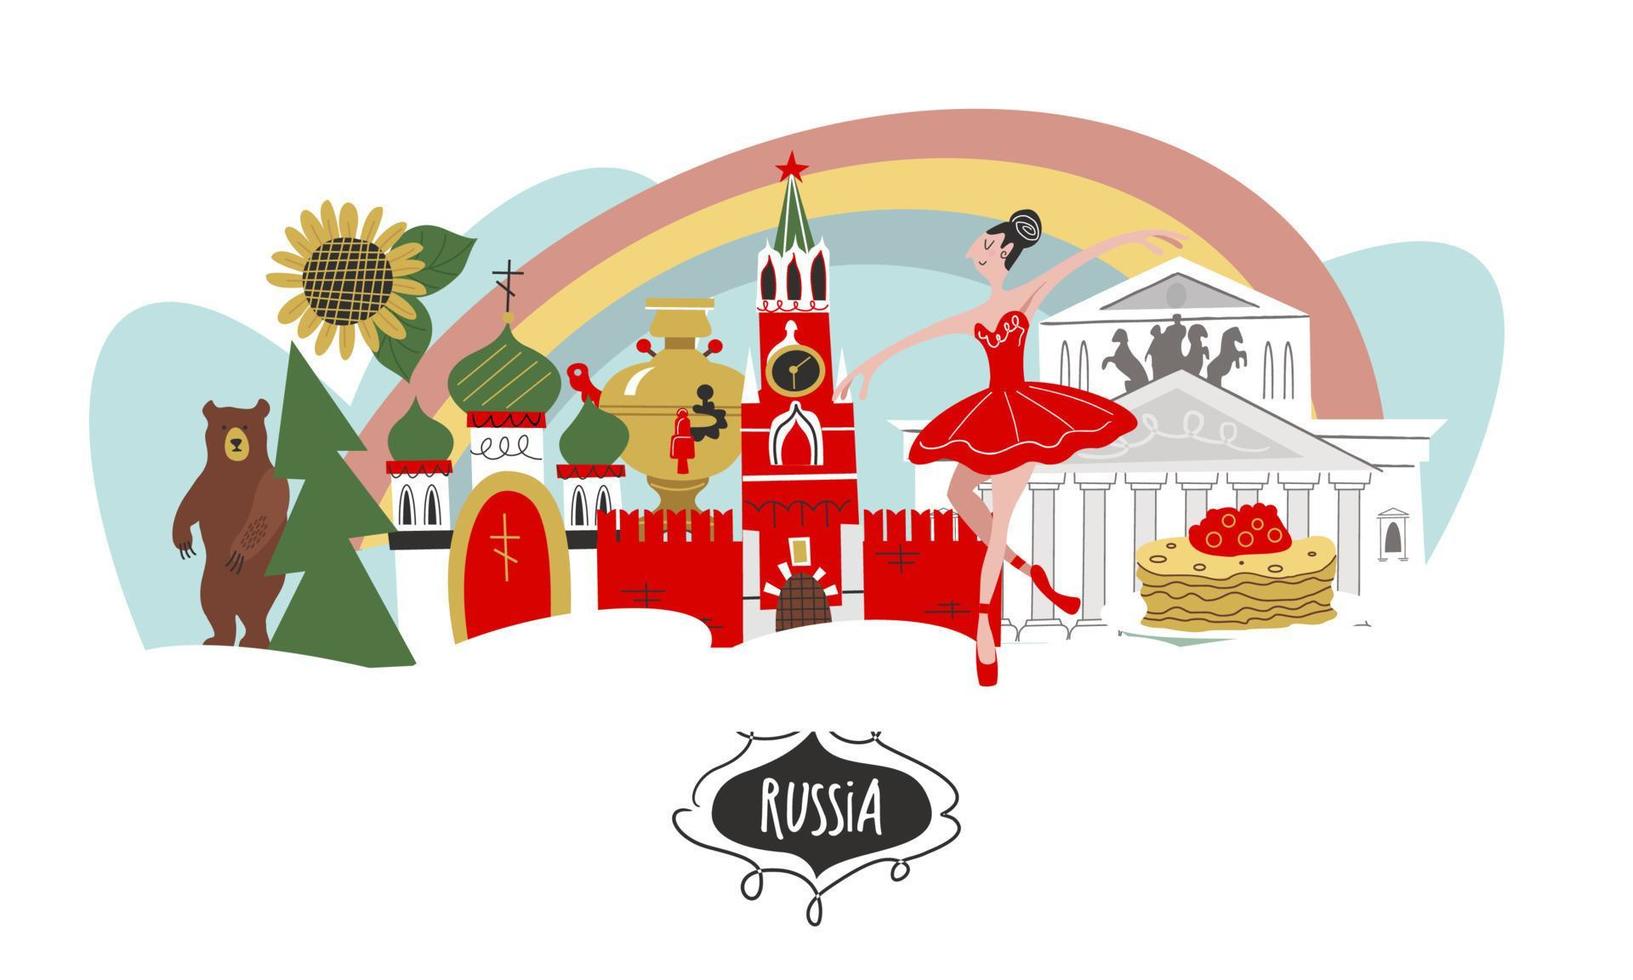 Ryssland. Rysslands sevärdheter och symboler för landet. vektor illustration. en uppsättning element för att skapa din design.